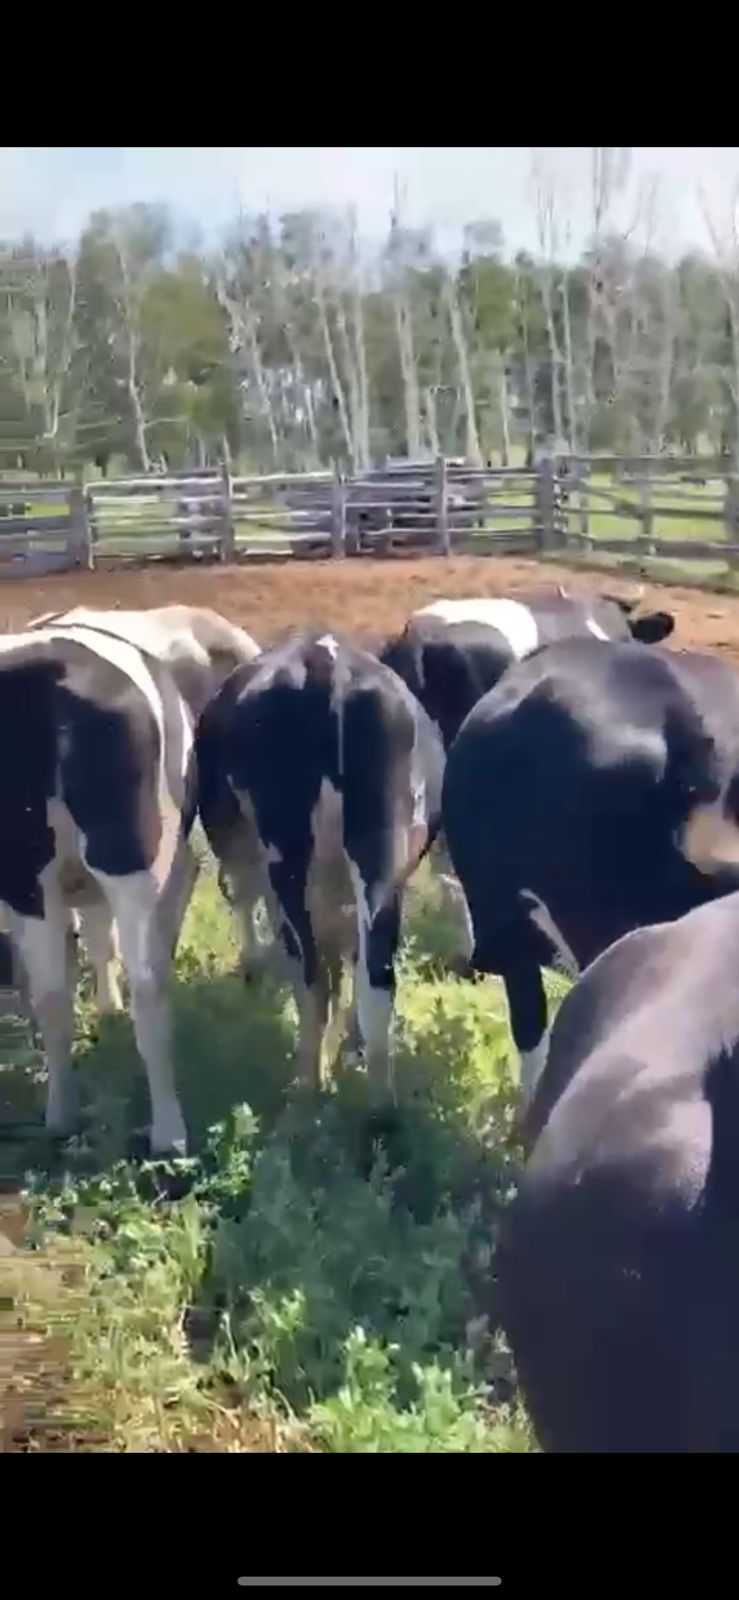 Продам коровы нетелей черно-пестрые стельные